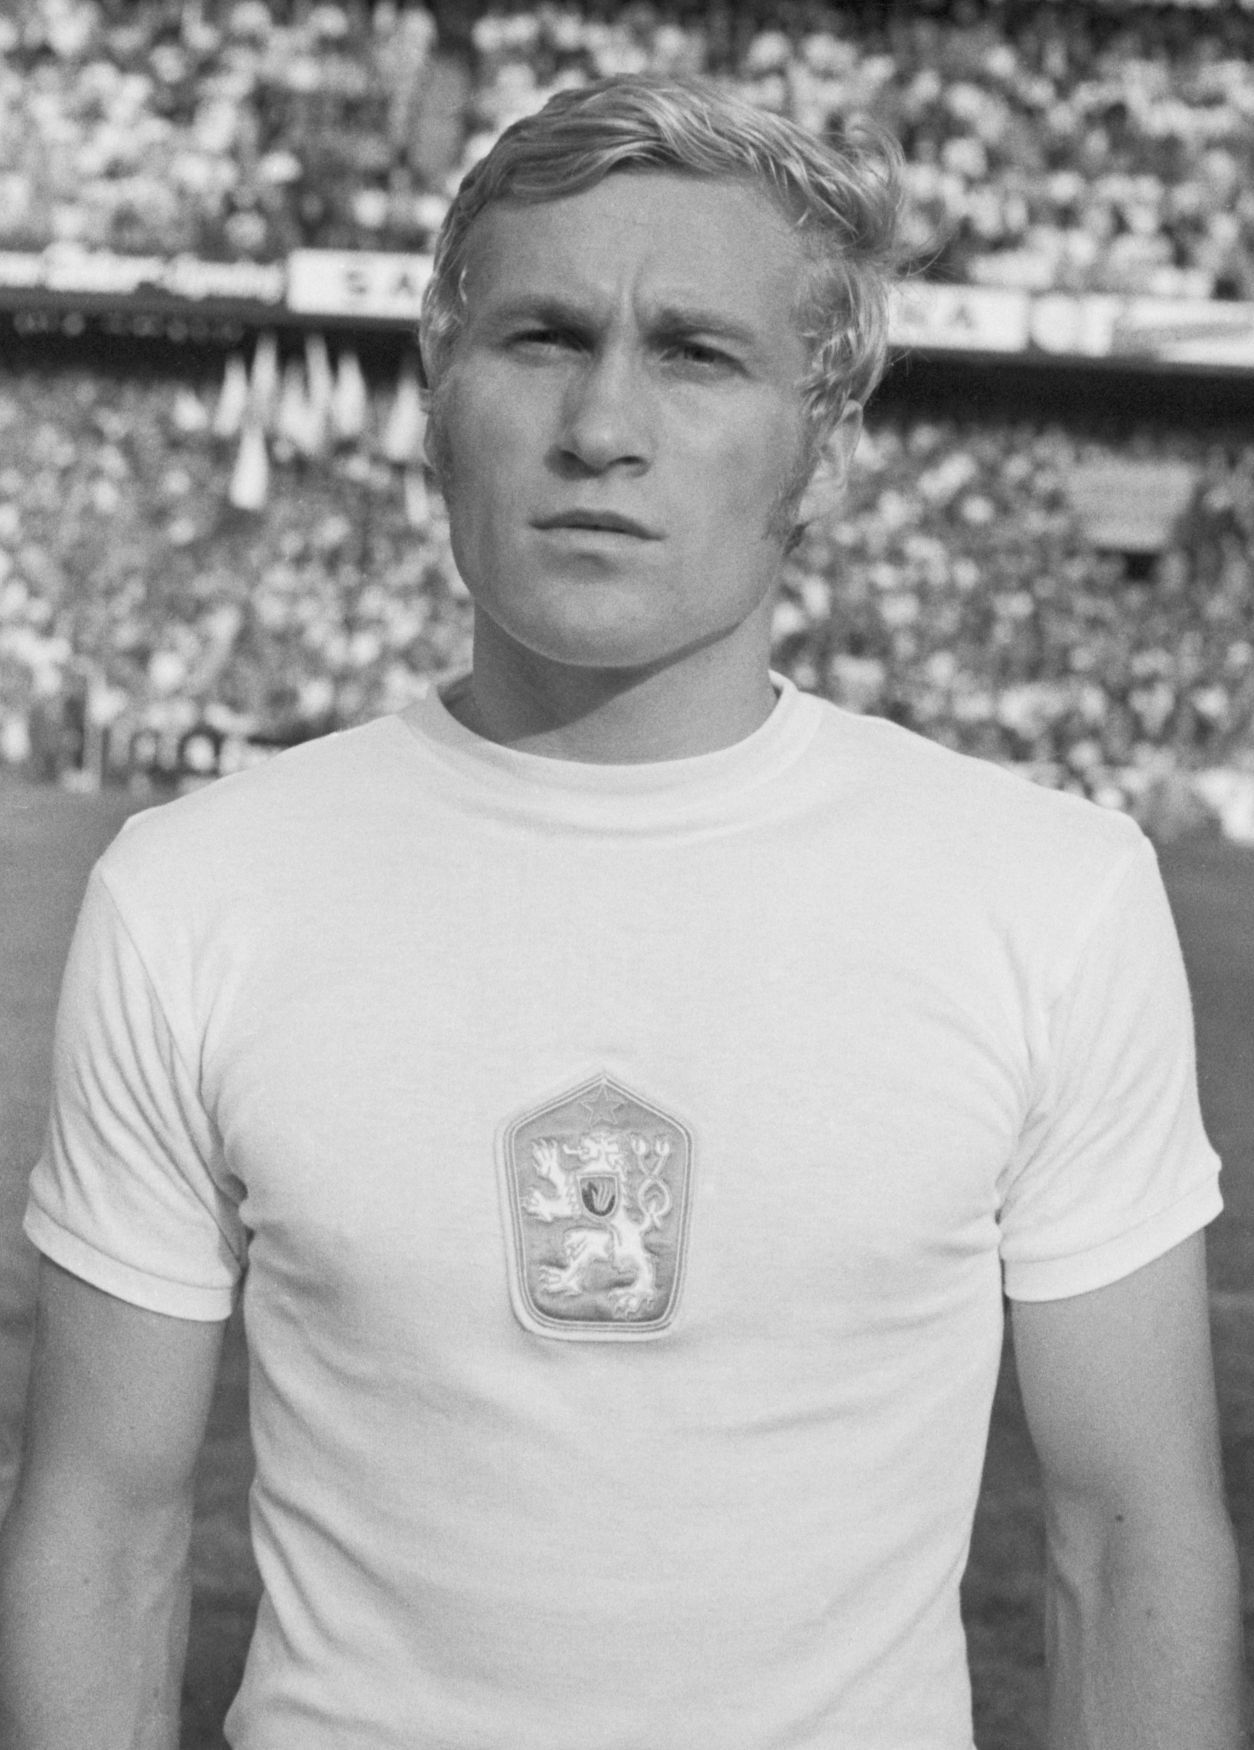 Ján Pivarník, fotbalový mistr Evropy z Bělehradu 1976